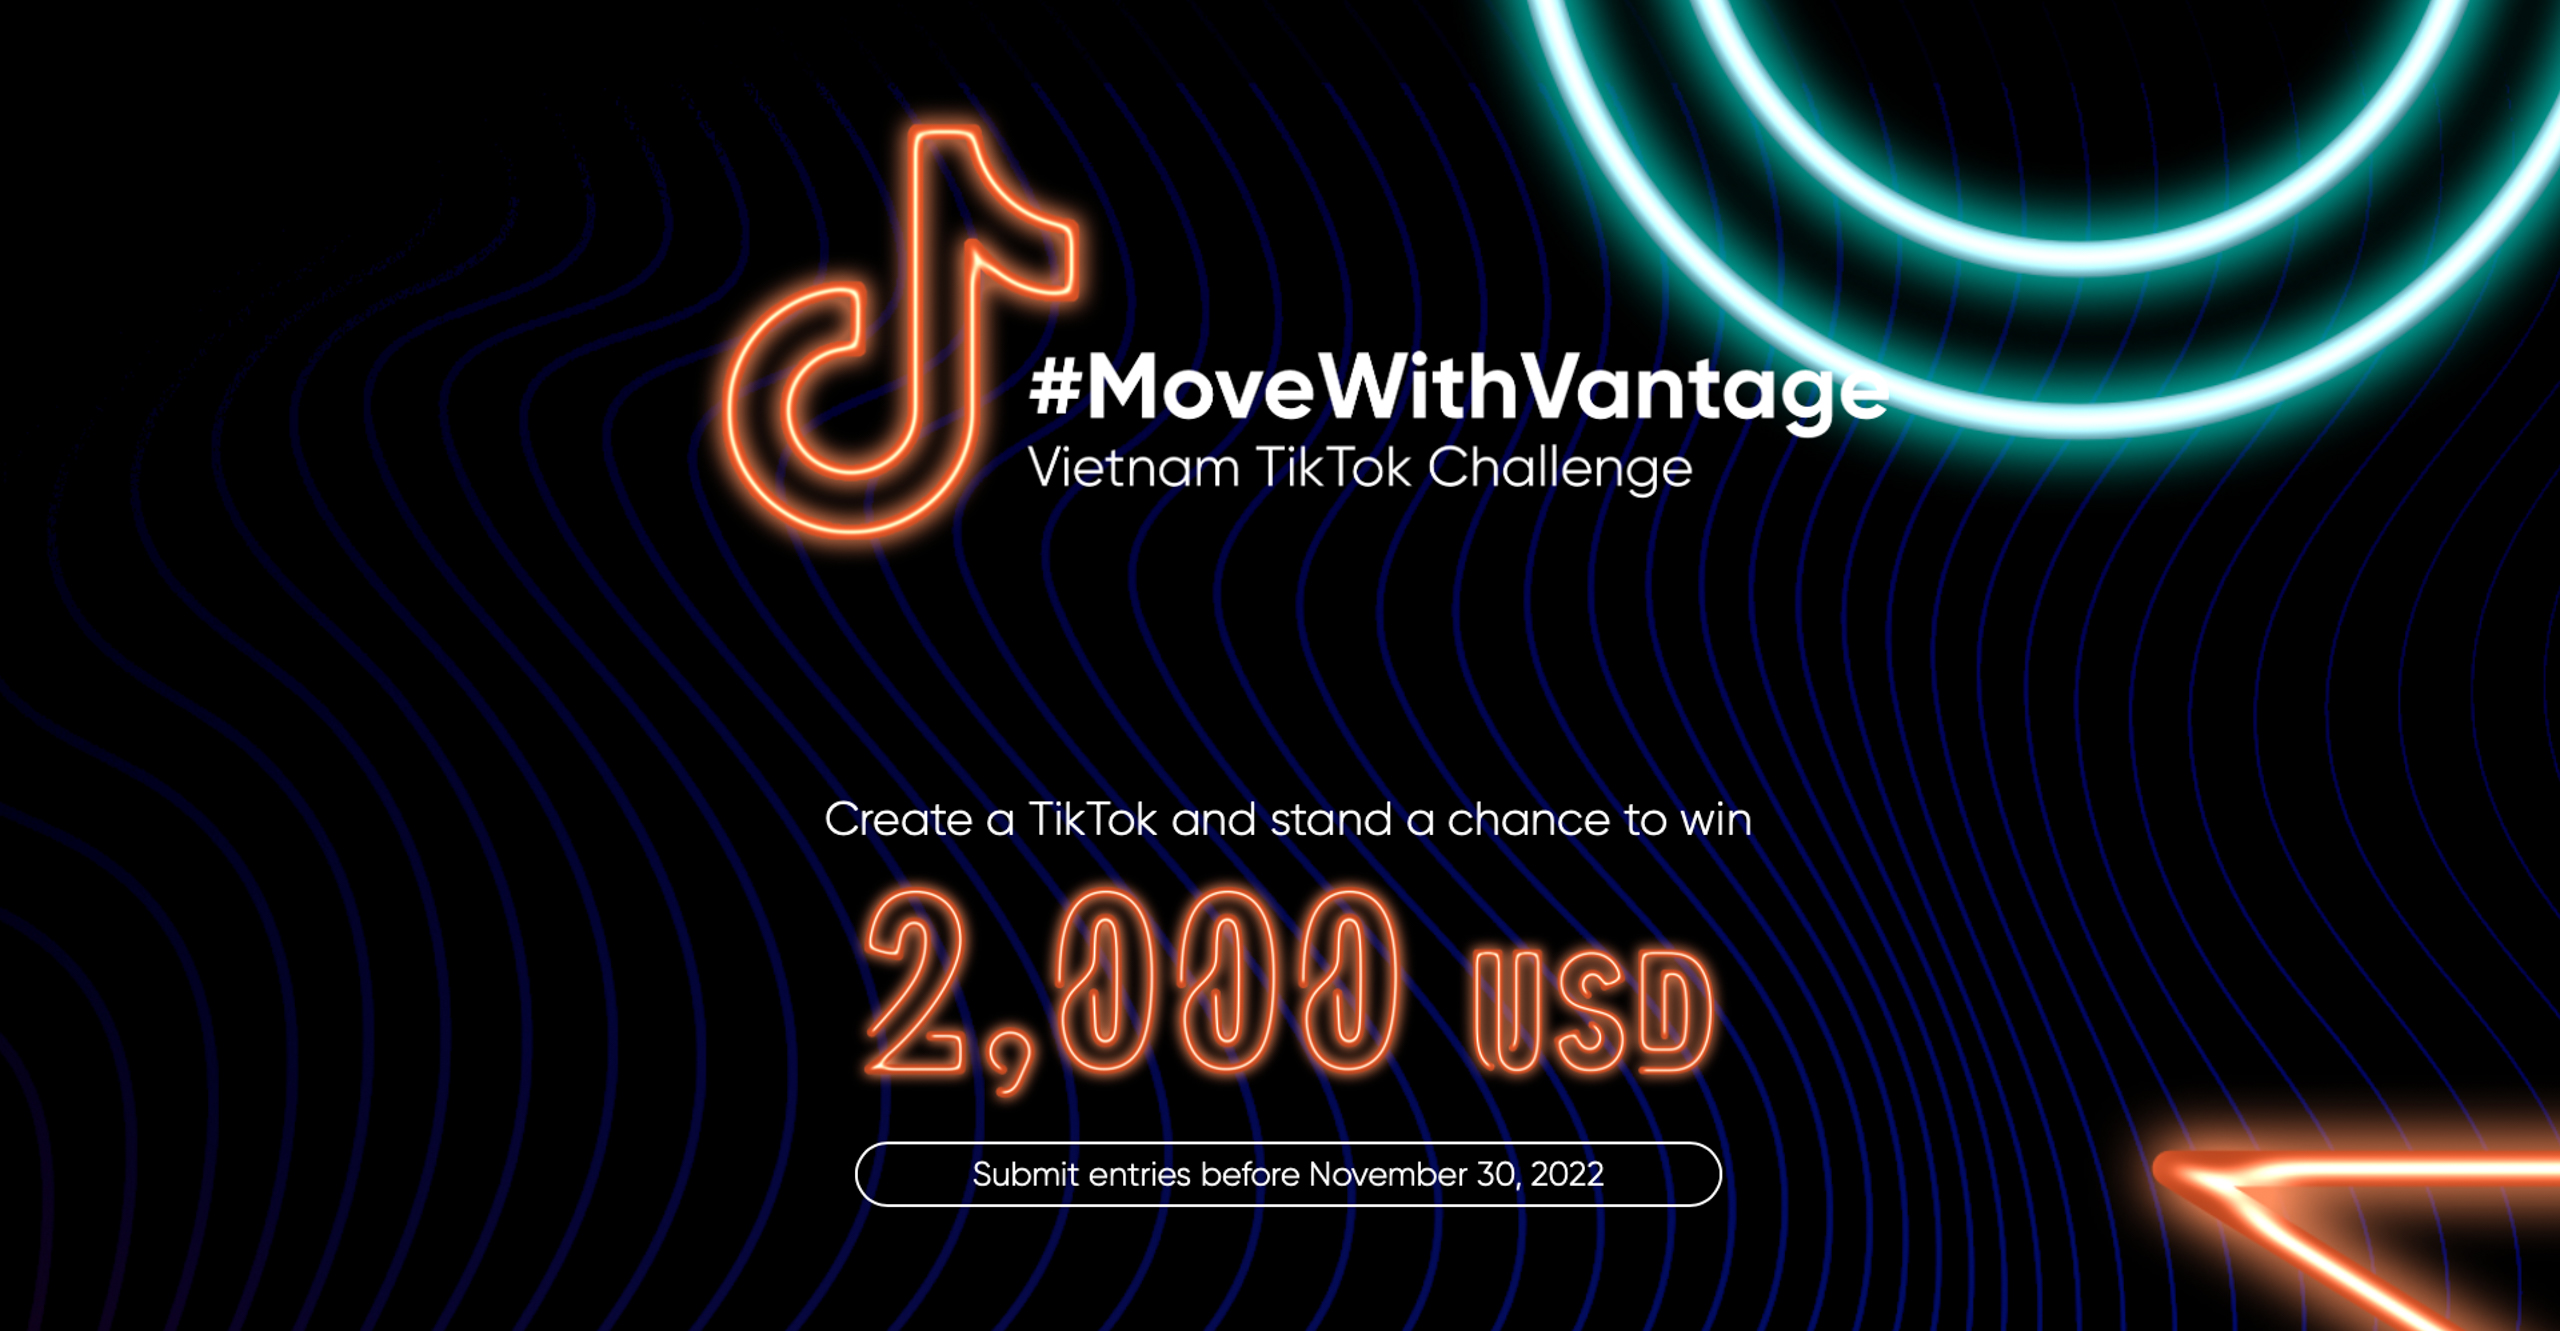 Vantage tổ chức TikTok Challenge #MoveWithVantage tại Việt Nam với giải thưởng lên tới 3,500 USD